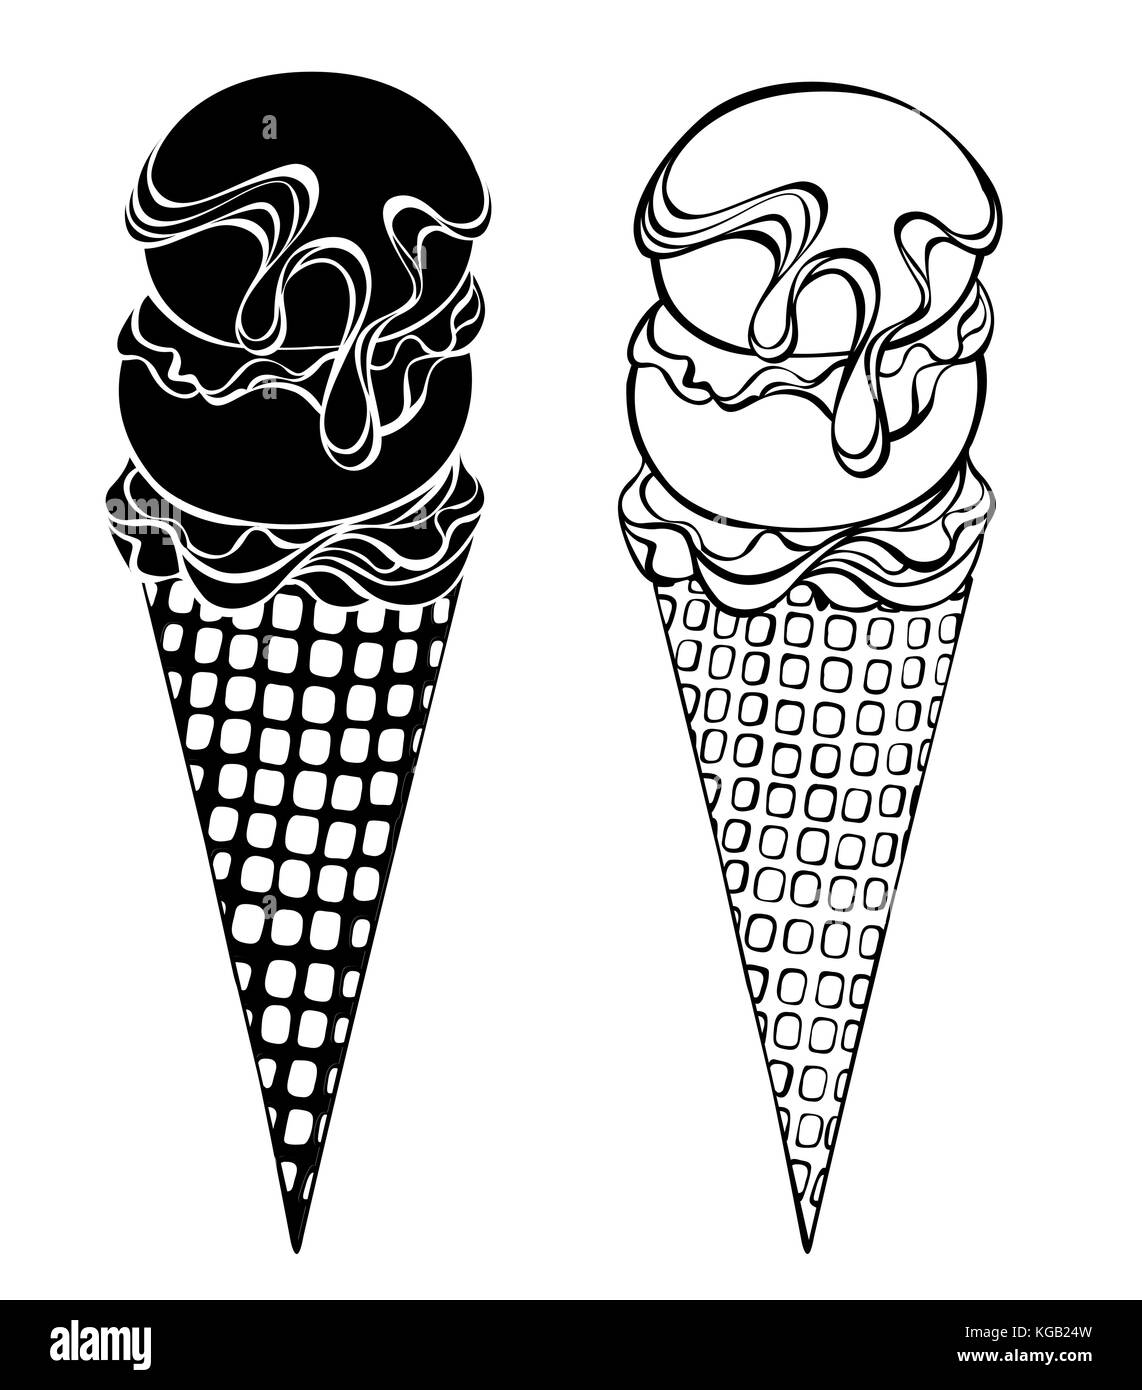 Zwei Kontur, stilisierte Eis mit Waffel Horn, zwei Kugeln, beträufelt mit Schokolade Sirup auf weißem Hintergrund. Künstlerische Zeichnung eines Eis. Stock Vektor